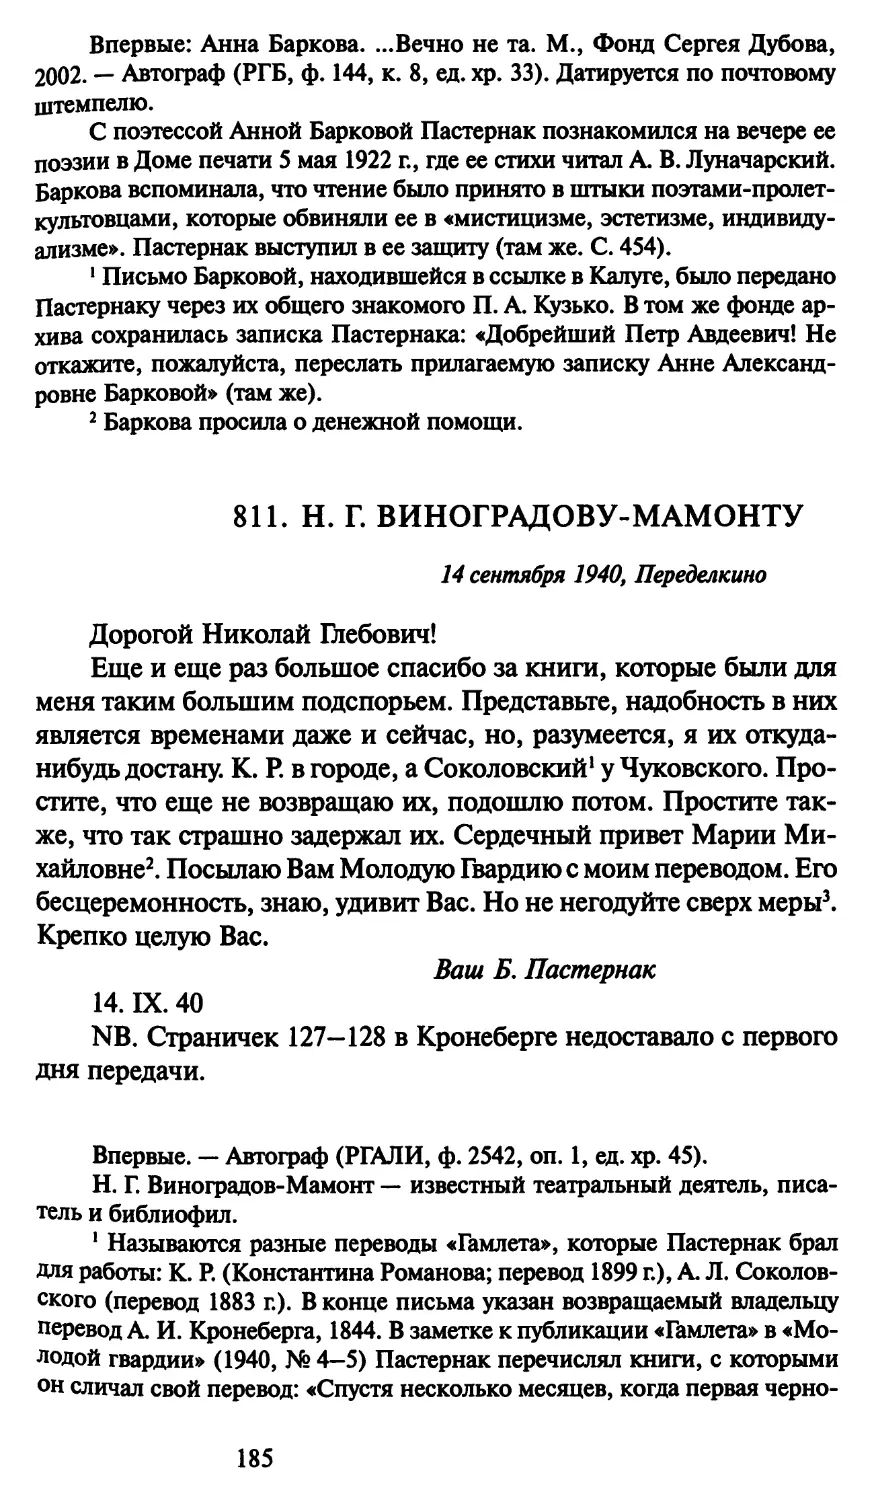 811. Н. Г. Виноградову-Мамонту 14 сентября 1940